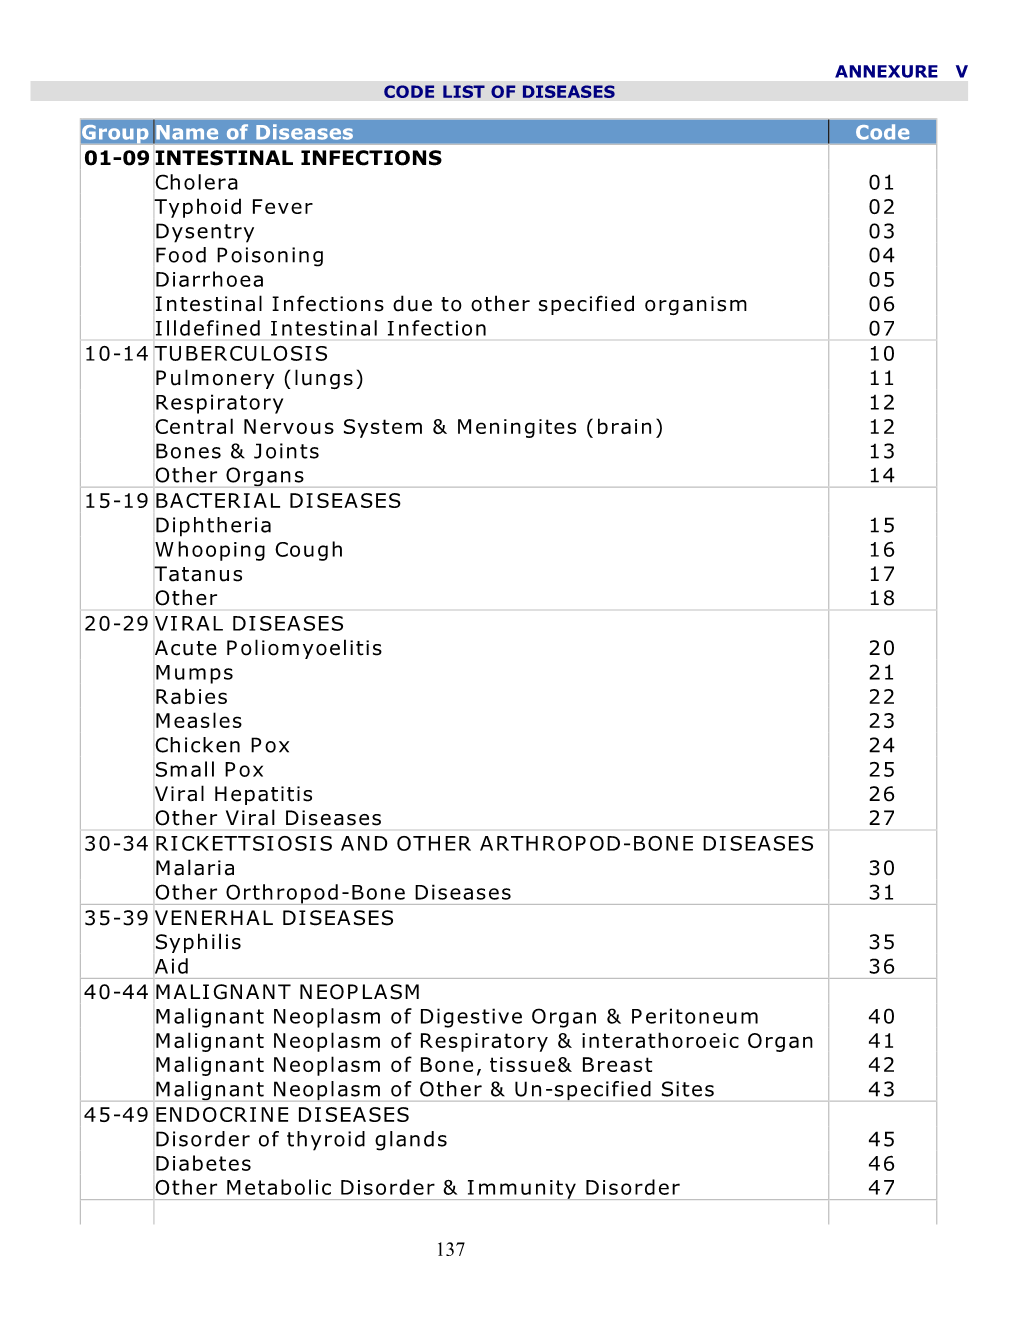 Code List of Diseases